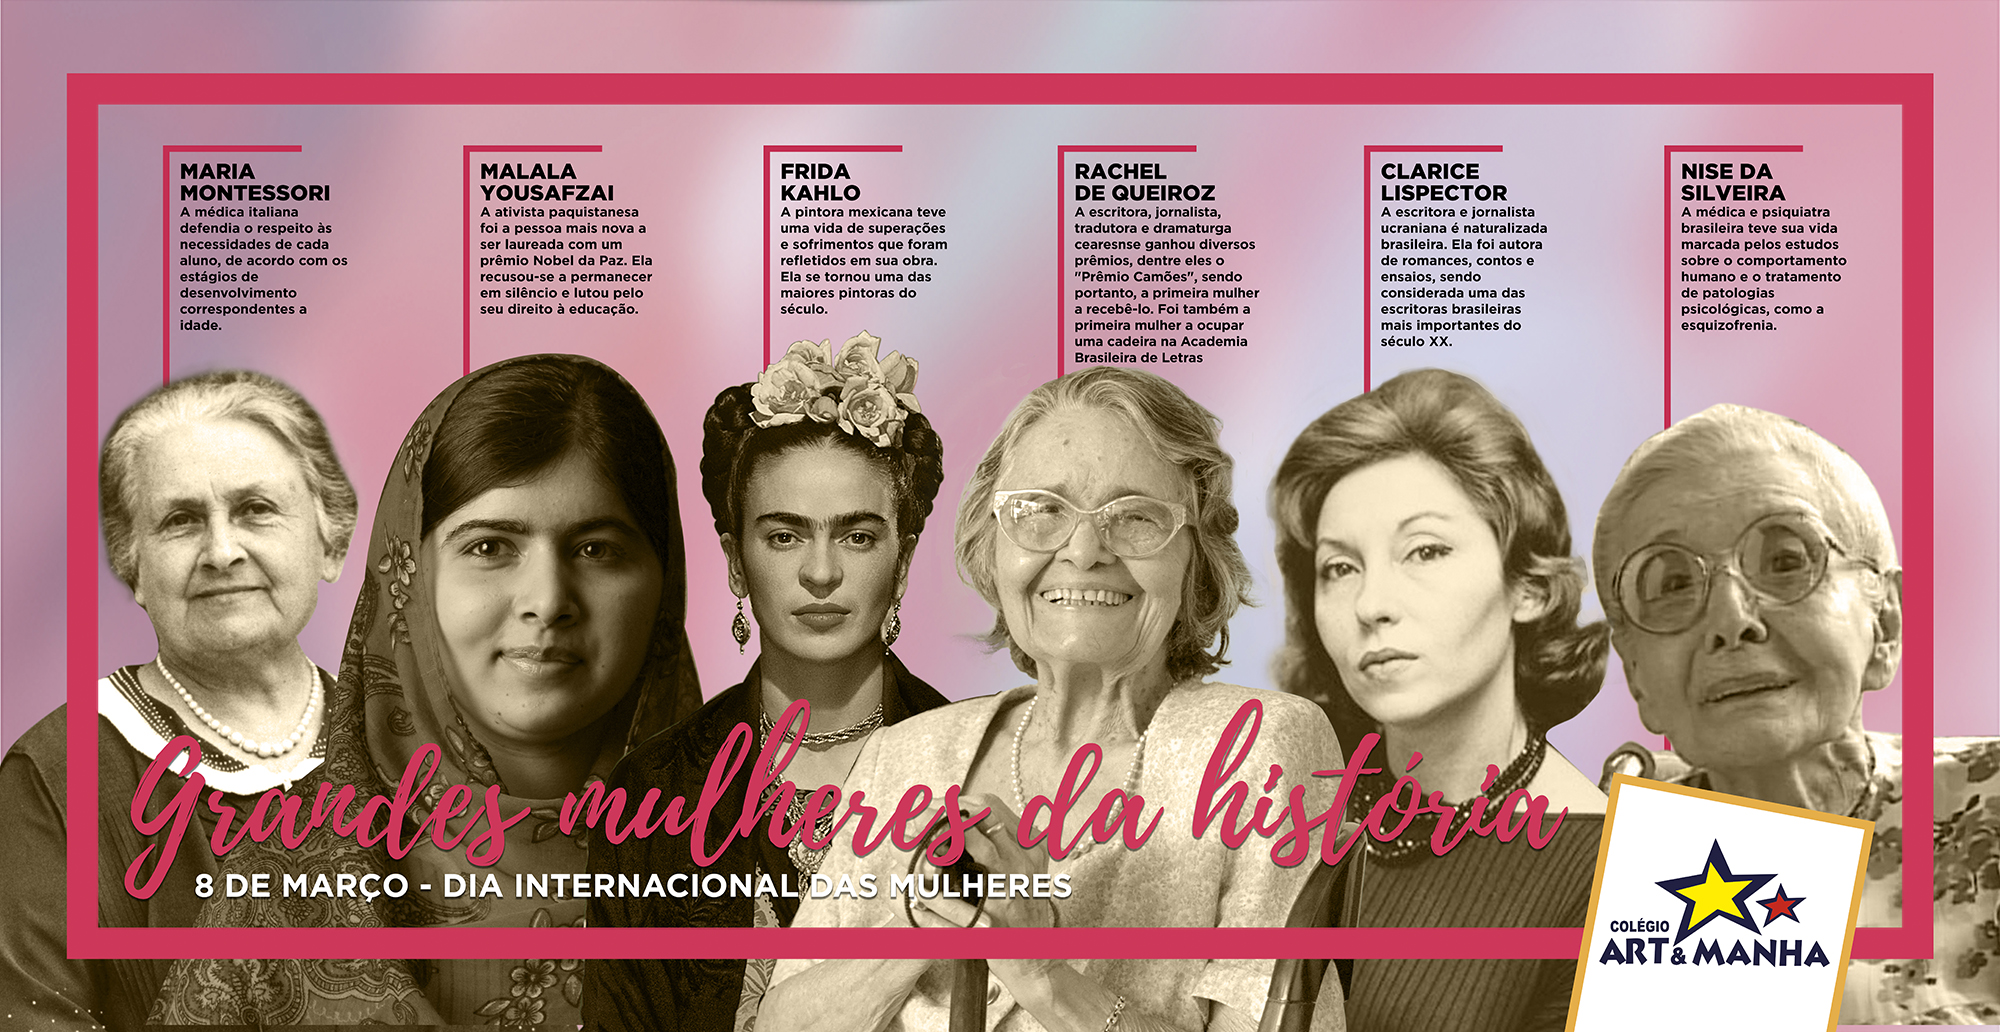 Colégio Art e Manha lança a semana das Mulheres